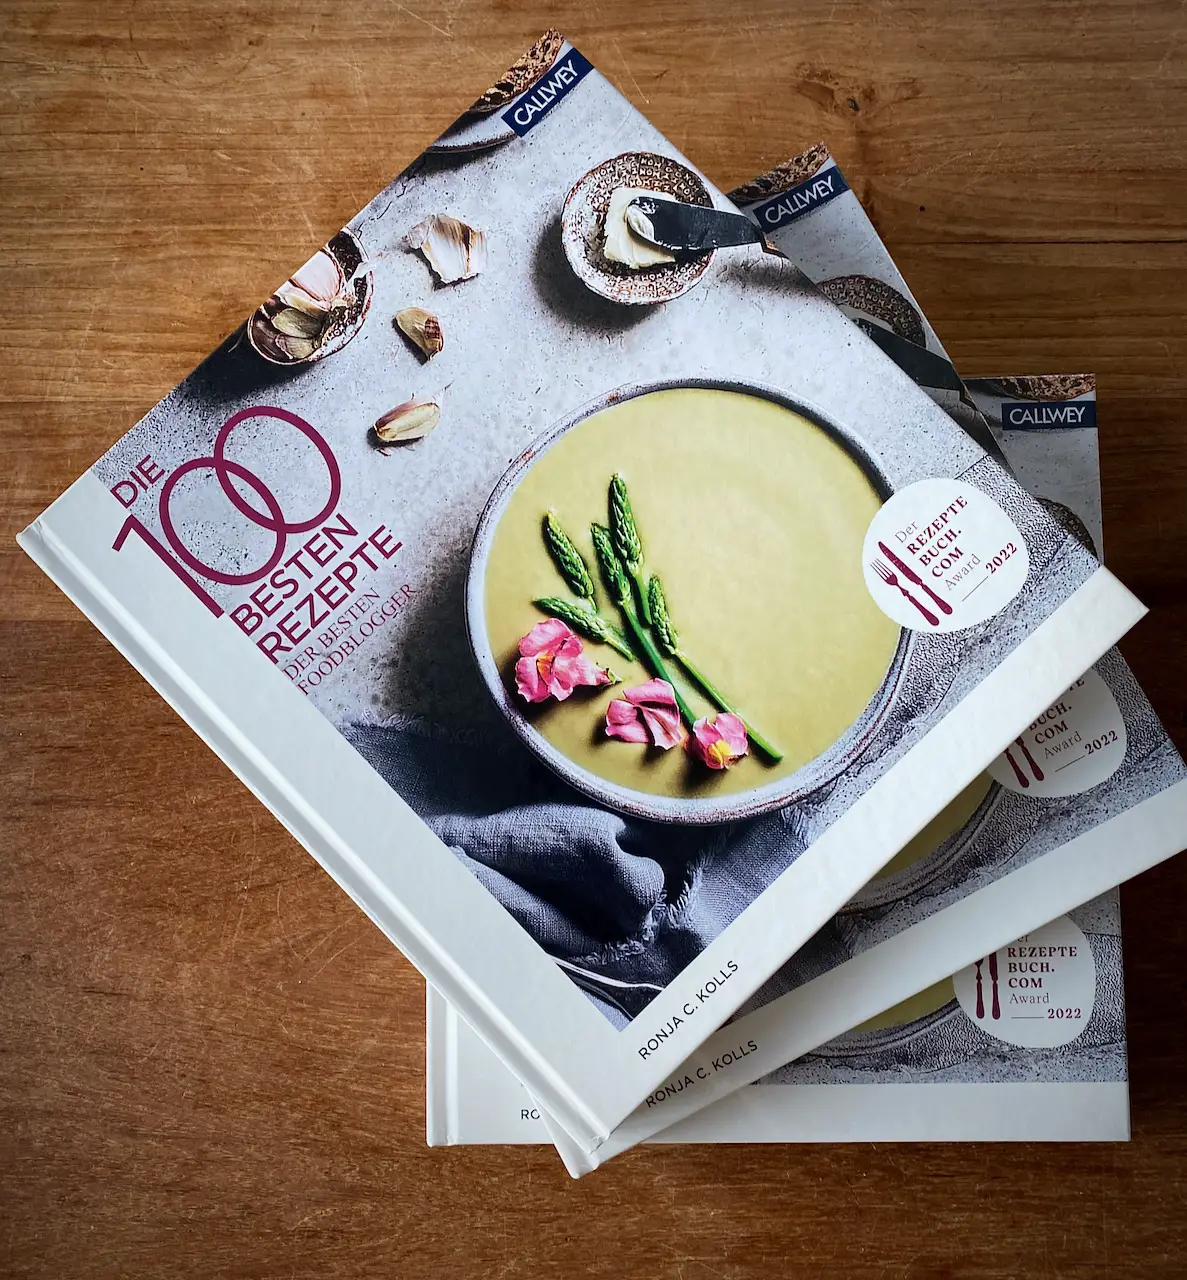 Gewinnspiel - Kochbuch Die 100 besten Rezepte der besten Foodblogger 2022